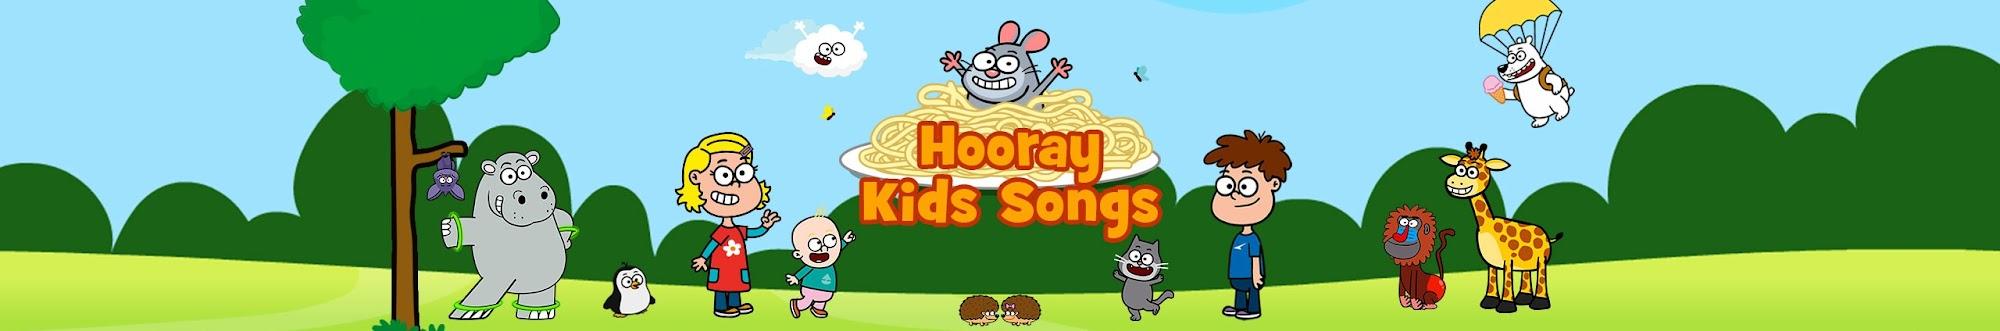 Hooray Kids Songs & Nursery Rhymes